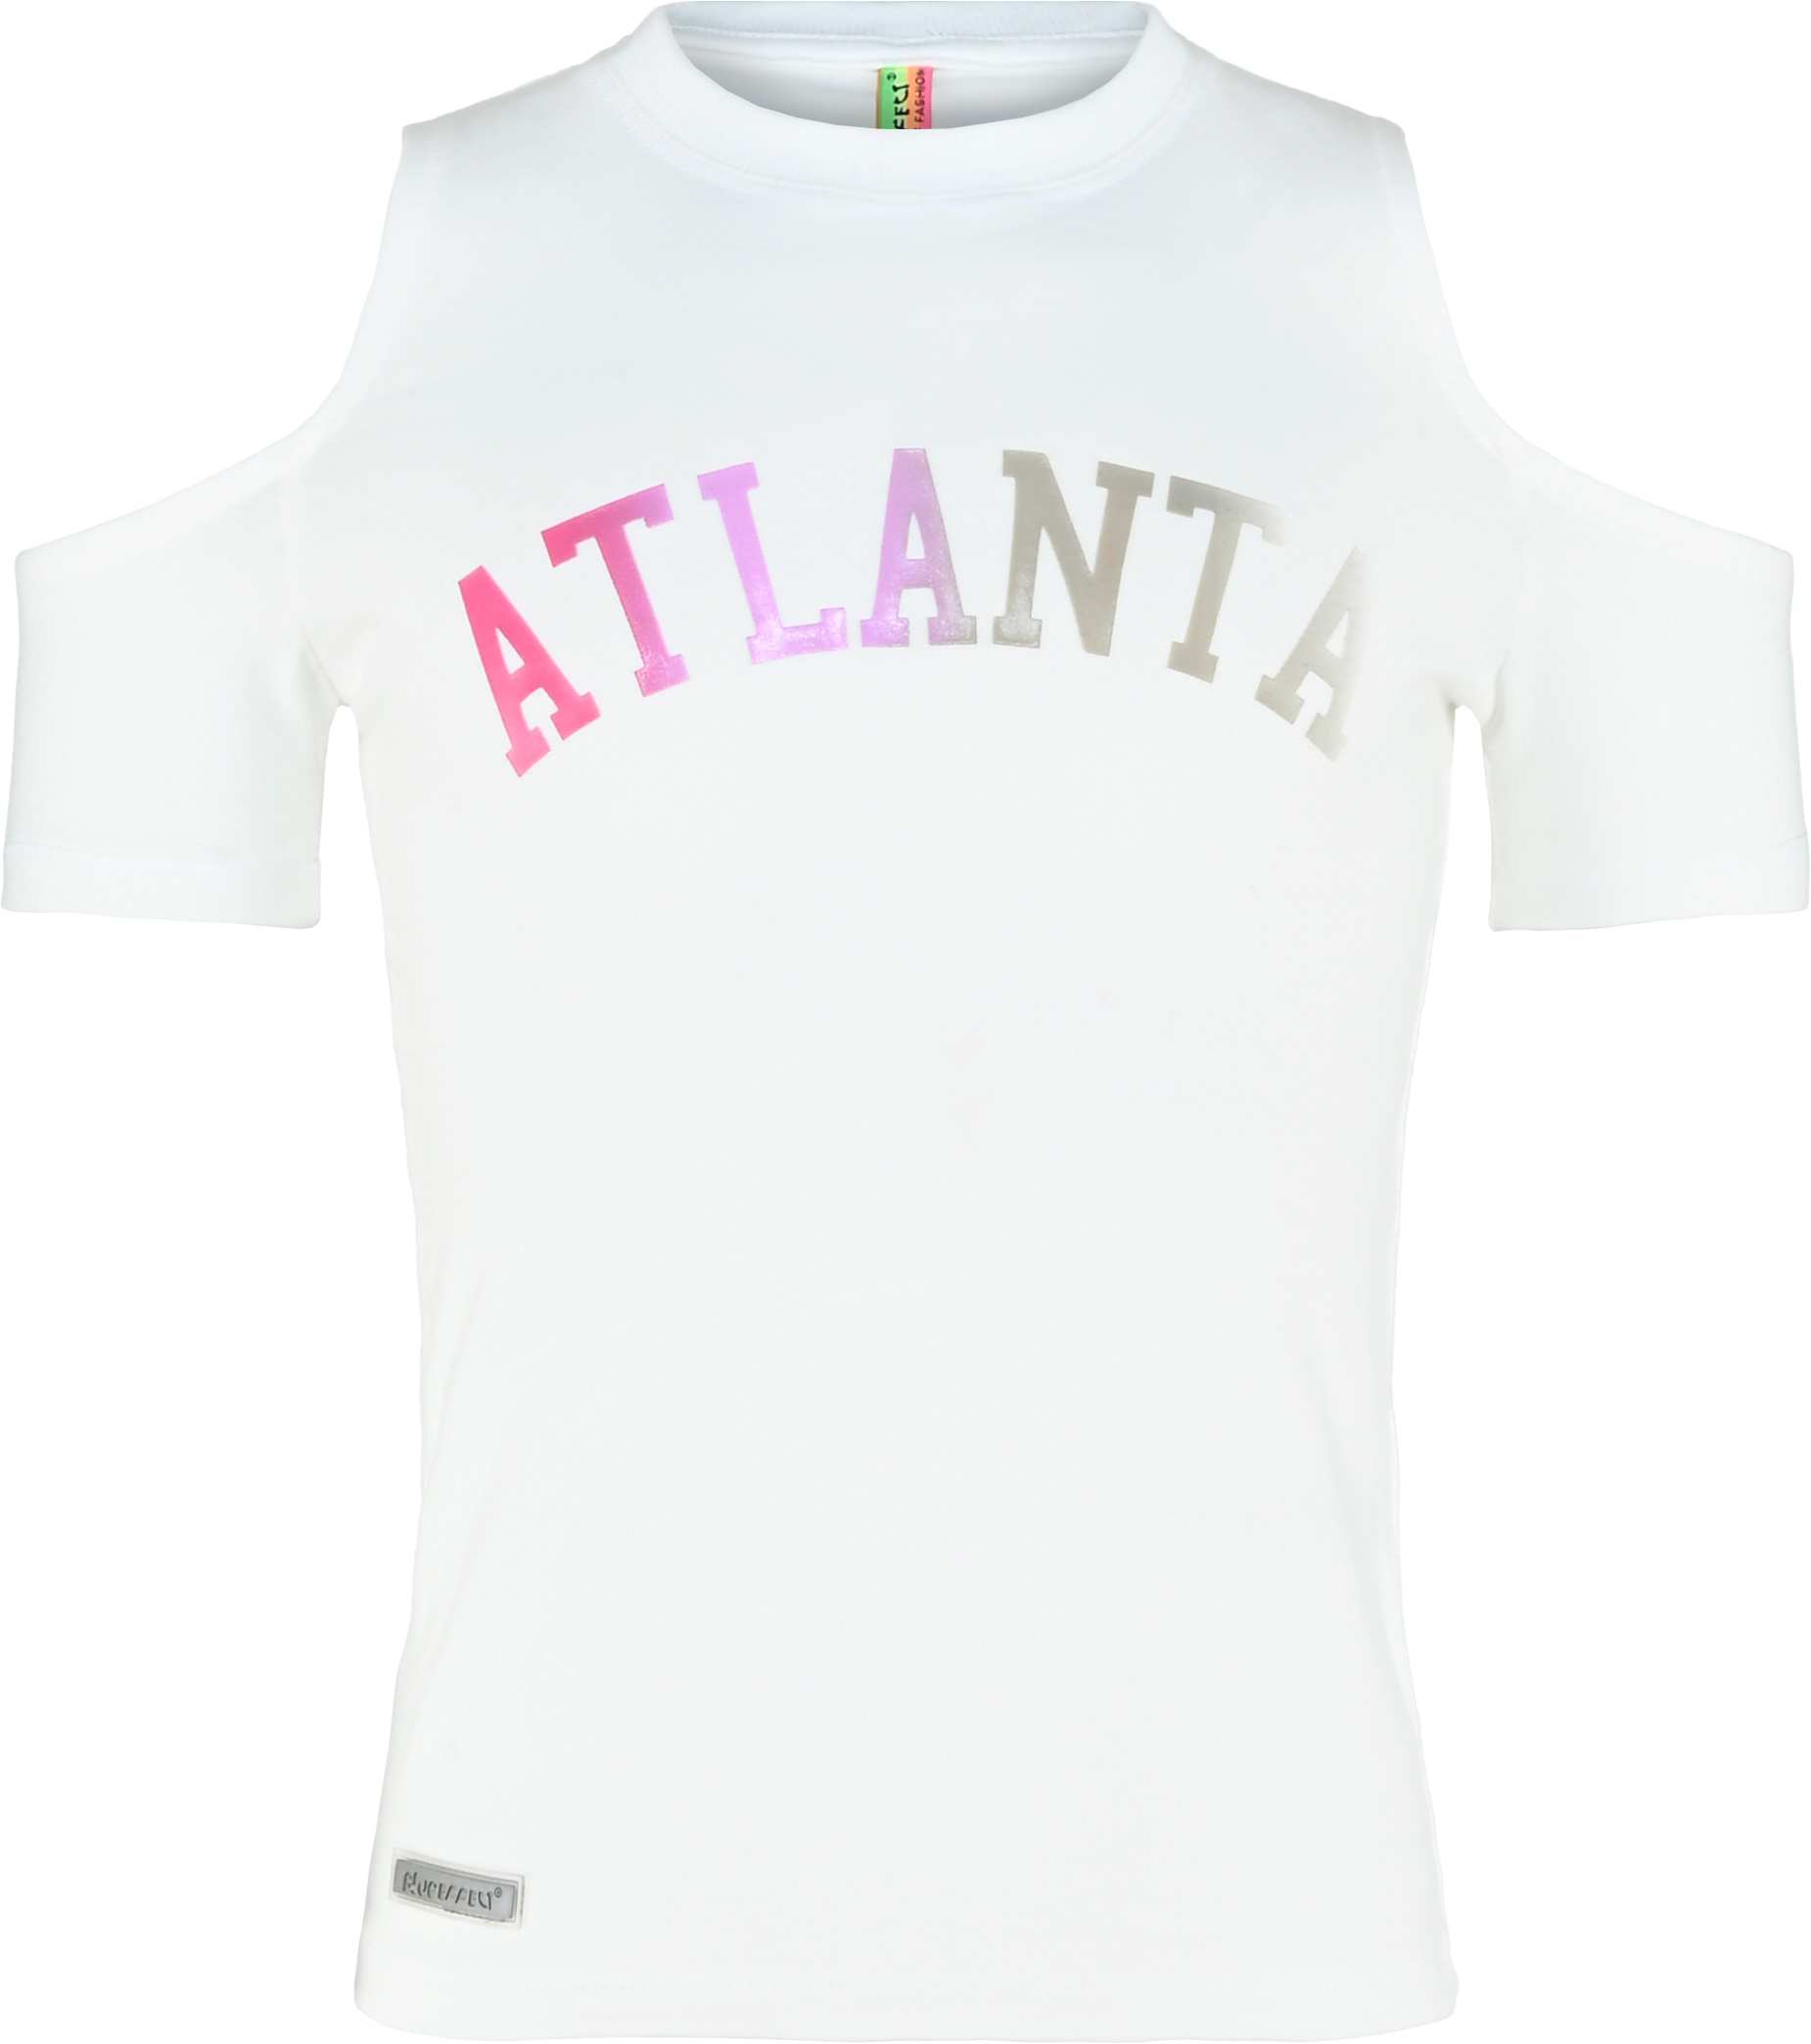 5734-Girls T-Shirt -Atlanta